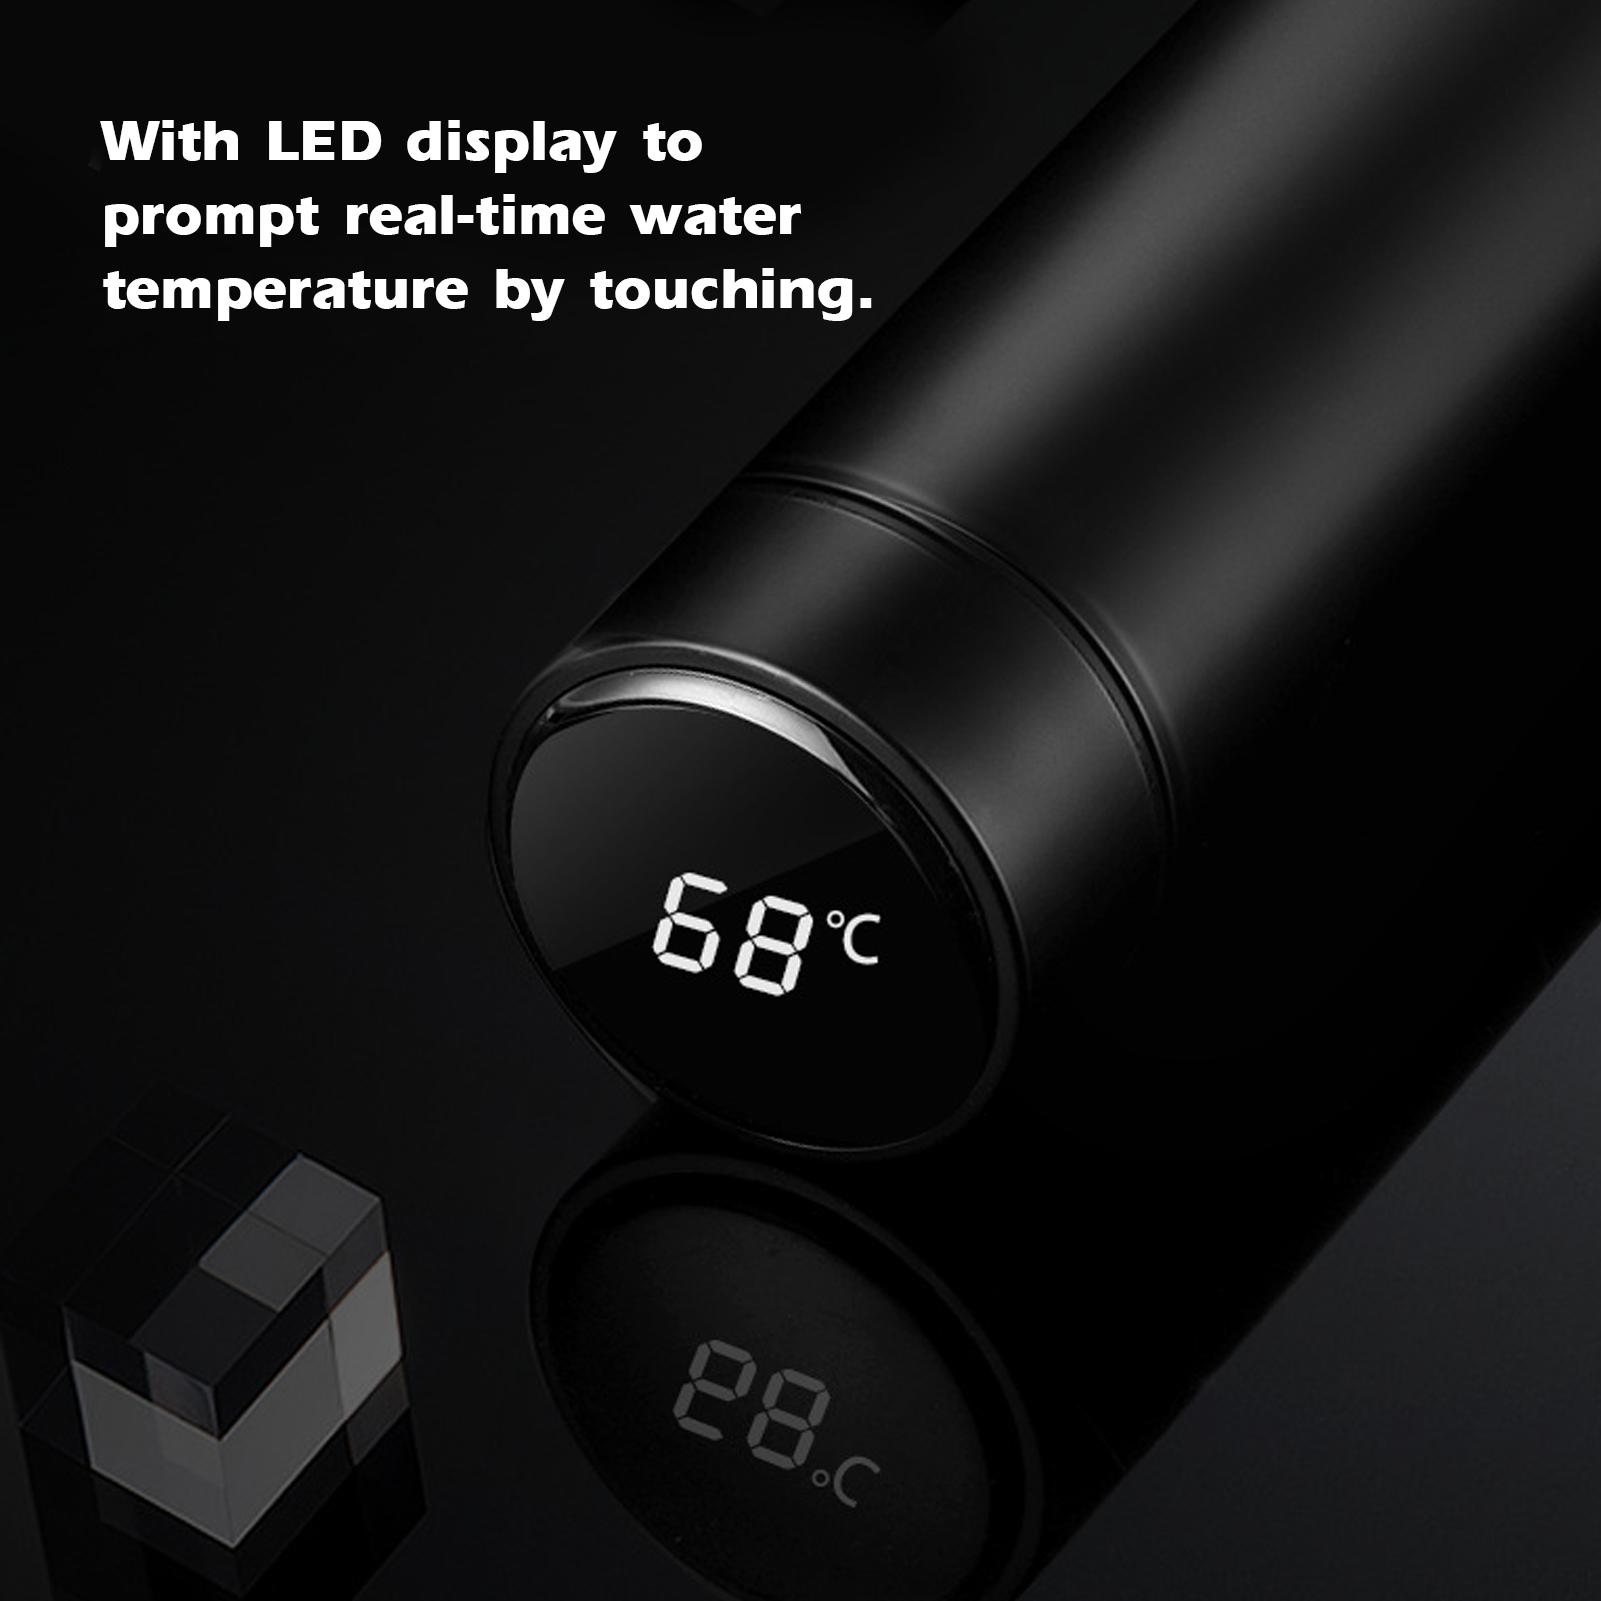 Bình giữ nhiệt bằng thép không gỉ, có màn hình LED hiển thị nhiệt độ